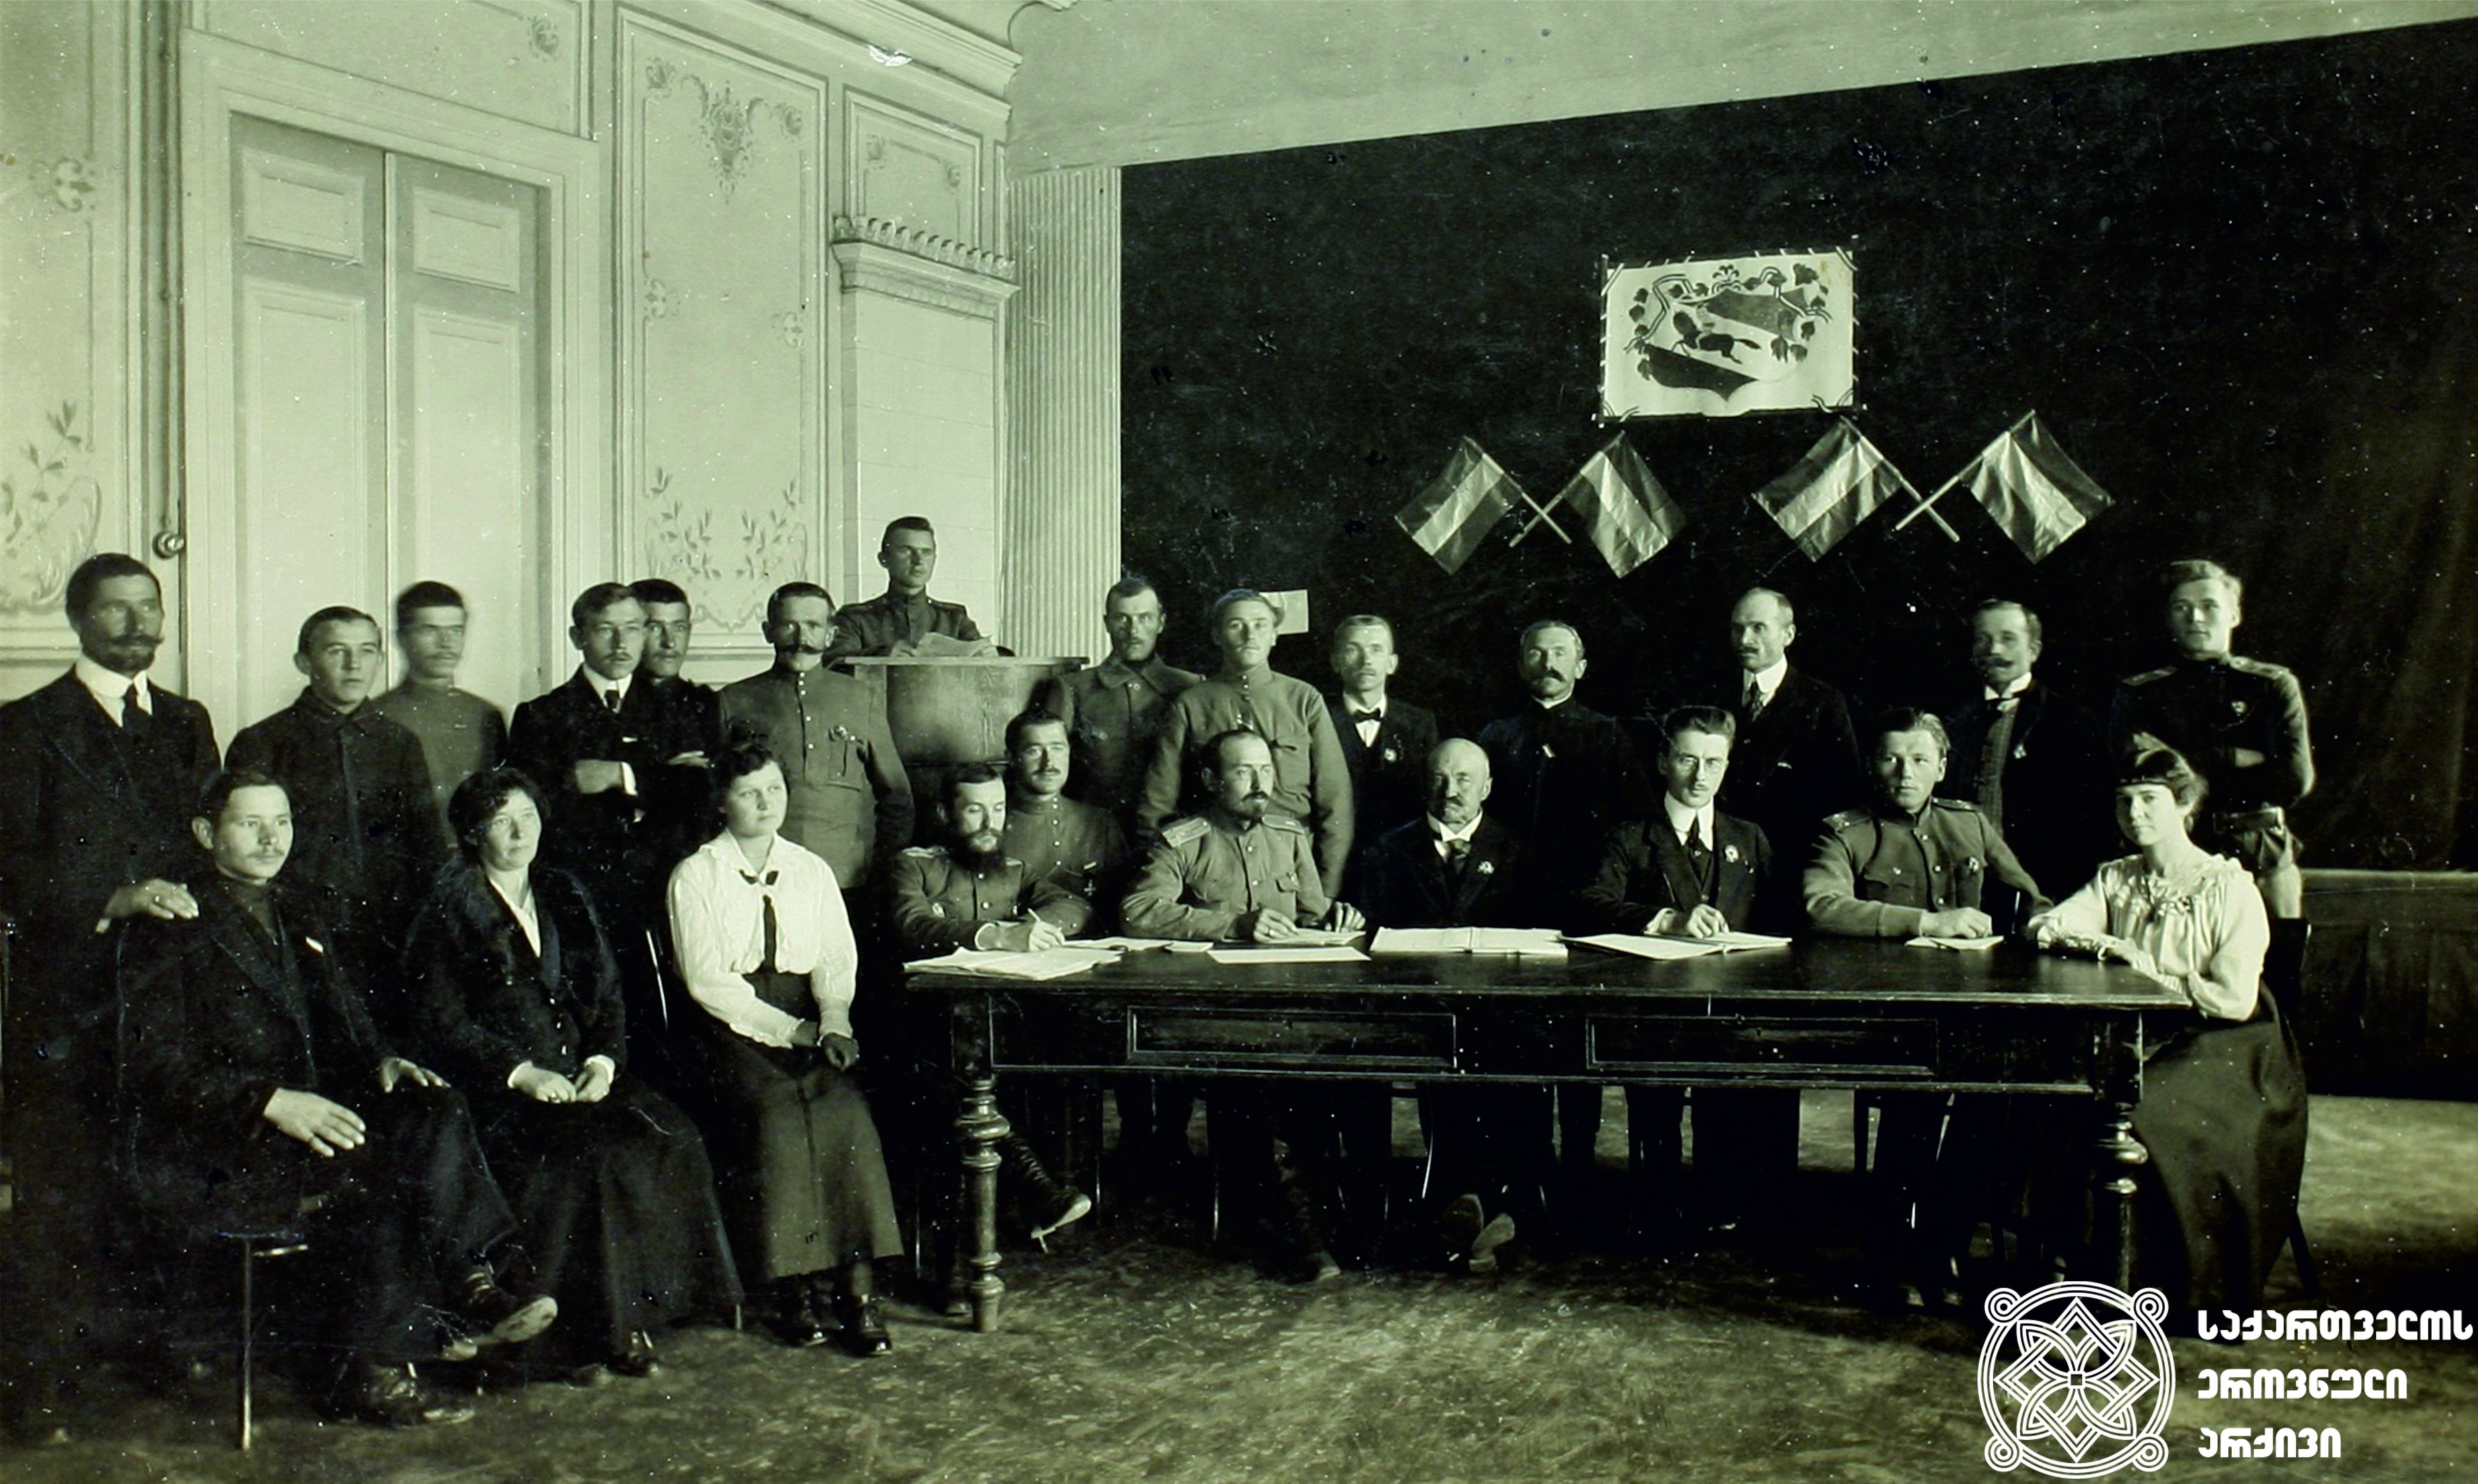 კავკასიაში ლიეტუველთა ორგანიზაციის წარმომადგენელთა ყრილობა. მაგიდის ცენტრში საპატიო თავმჯდომარე პეტრას ვილეიშისი, მის გვერდით, მარჯვნივ, ყრილობის თავმჯდომარე პრანას დაილიდე. <br>
თბილისი 1917 წელი, 27-30 დეკემბერი<br>
Congress of the representatives of Lithuanian organizations in the Caucasus. At the table, in the center – Honorary Chairman Petras Vileišis, next to him to the right - Chairman of the Congress Pranas Dailidé. <br>Tbilisi, December 27- 30, 1917